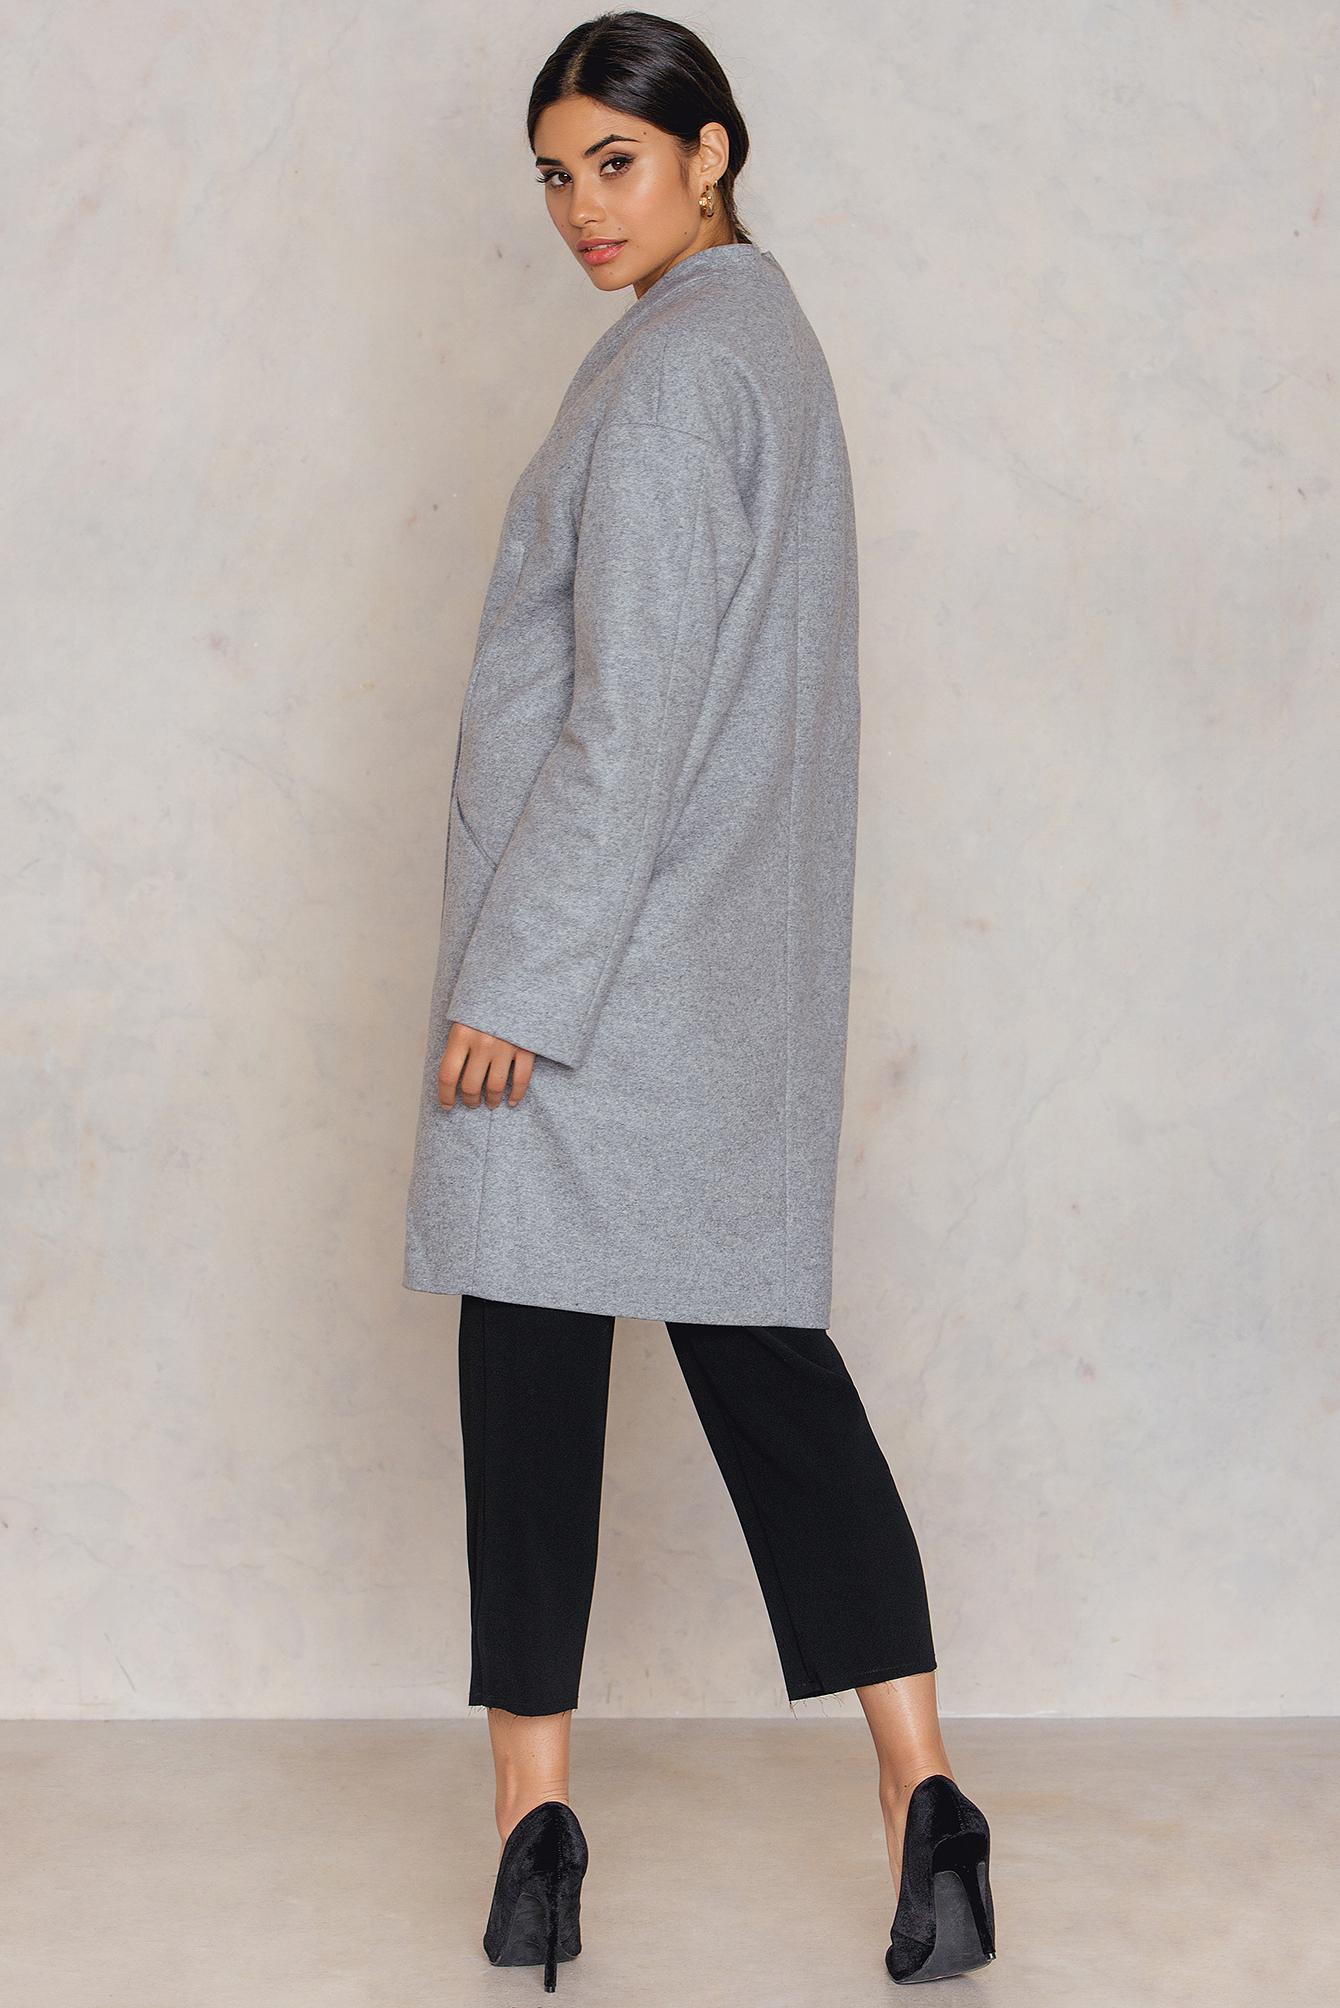 Filippa K Wool Elise Coat in Grey Melange (Gray) - Lyst